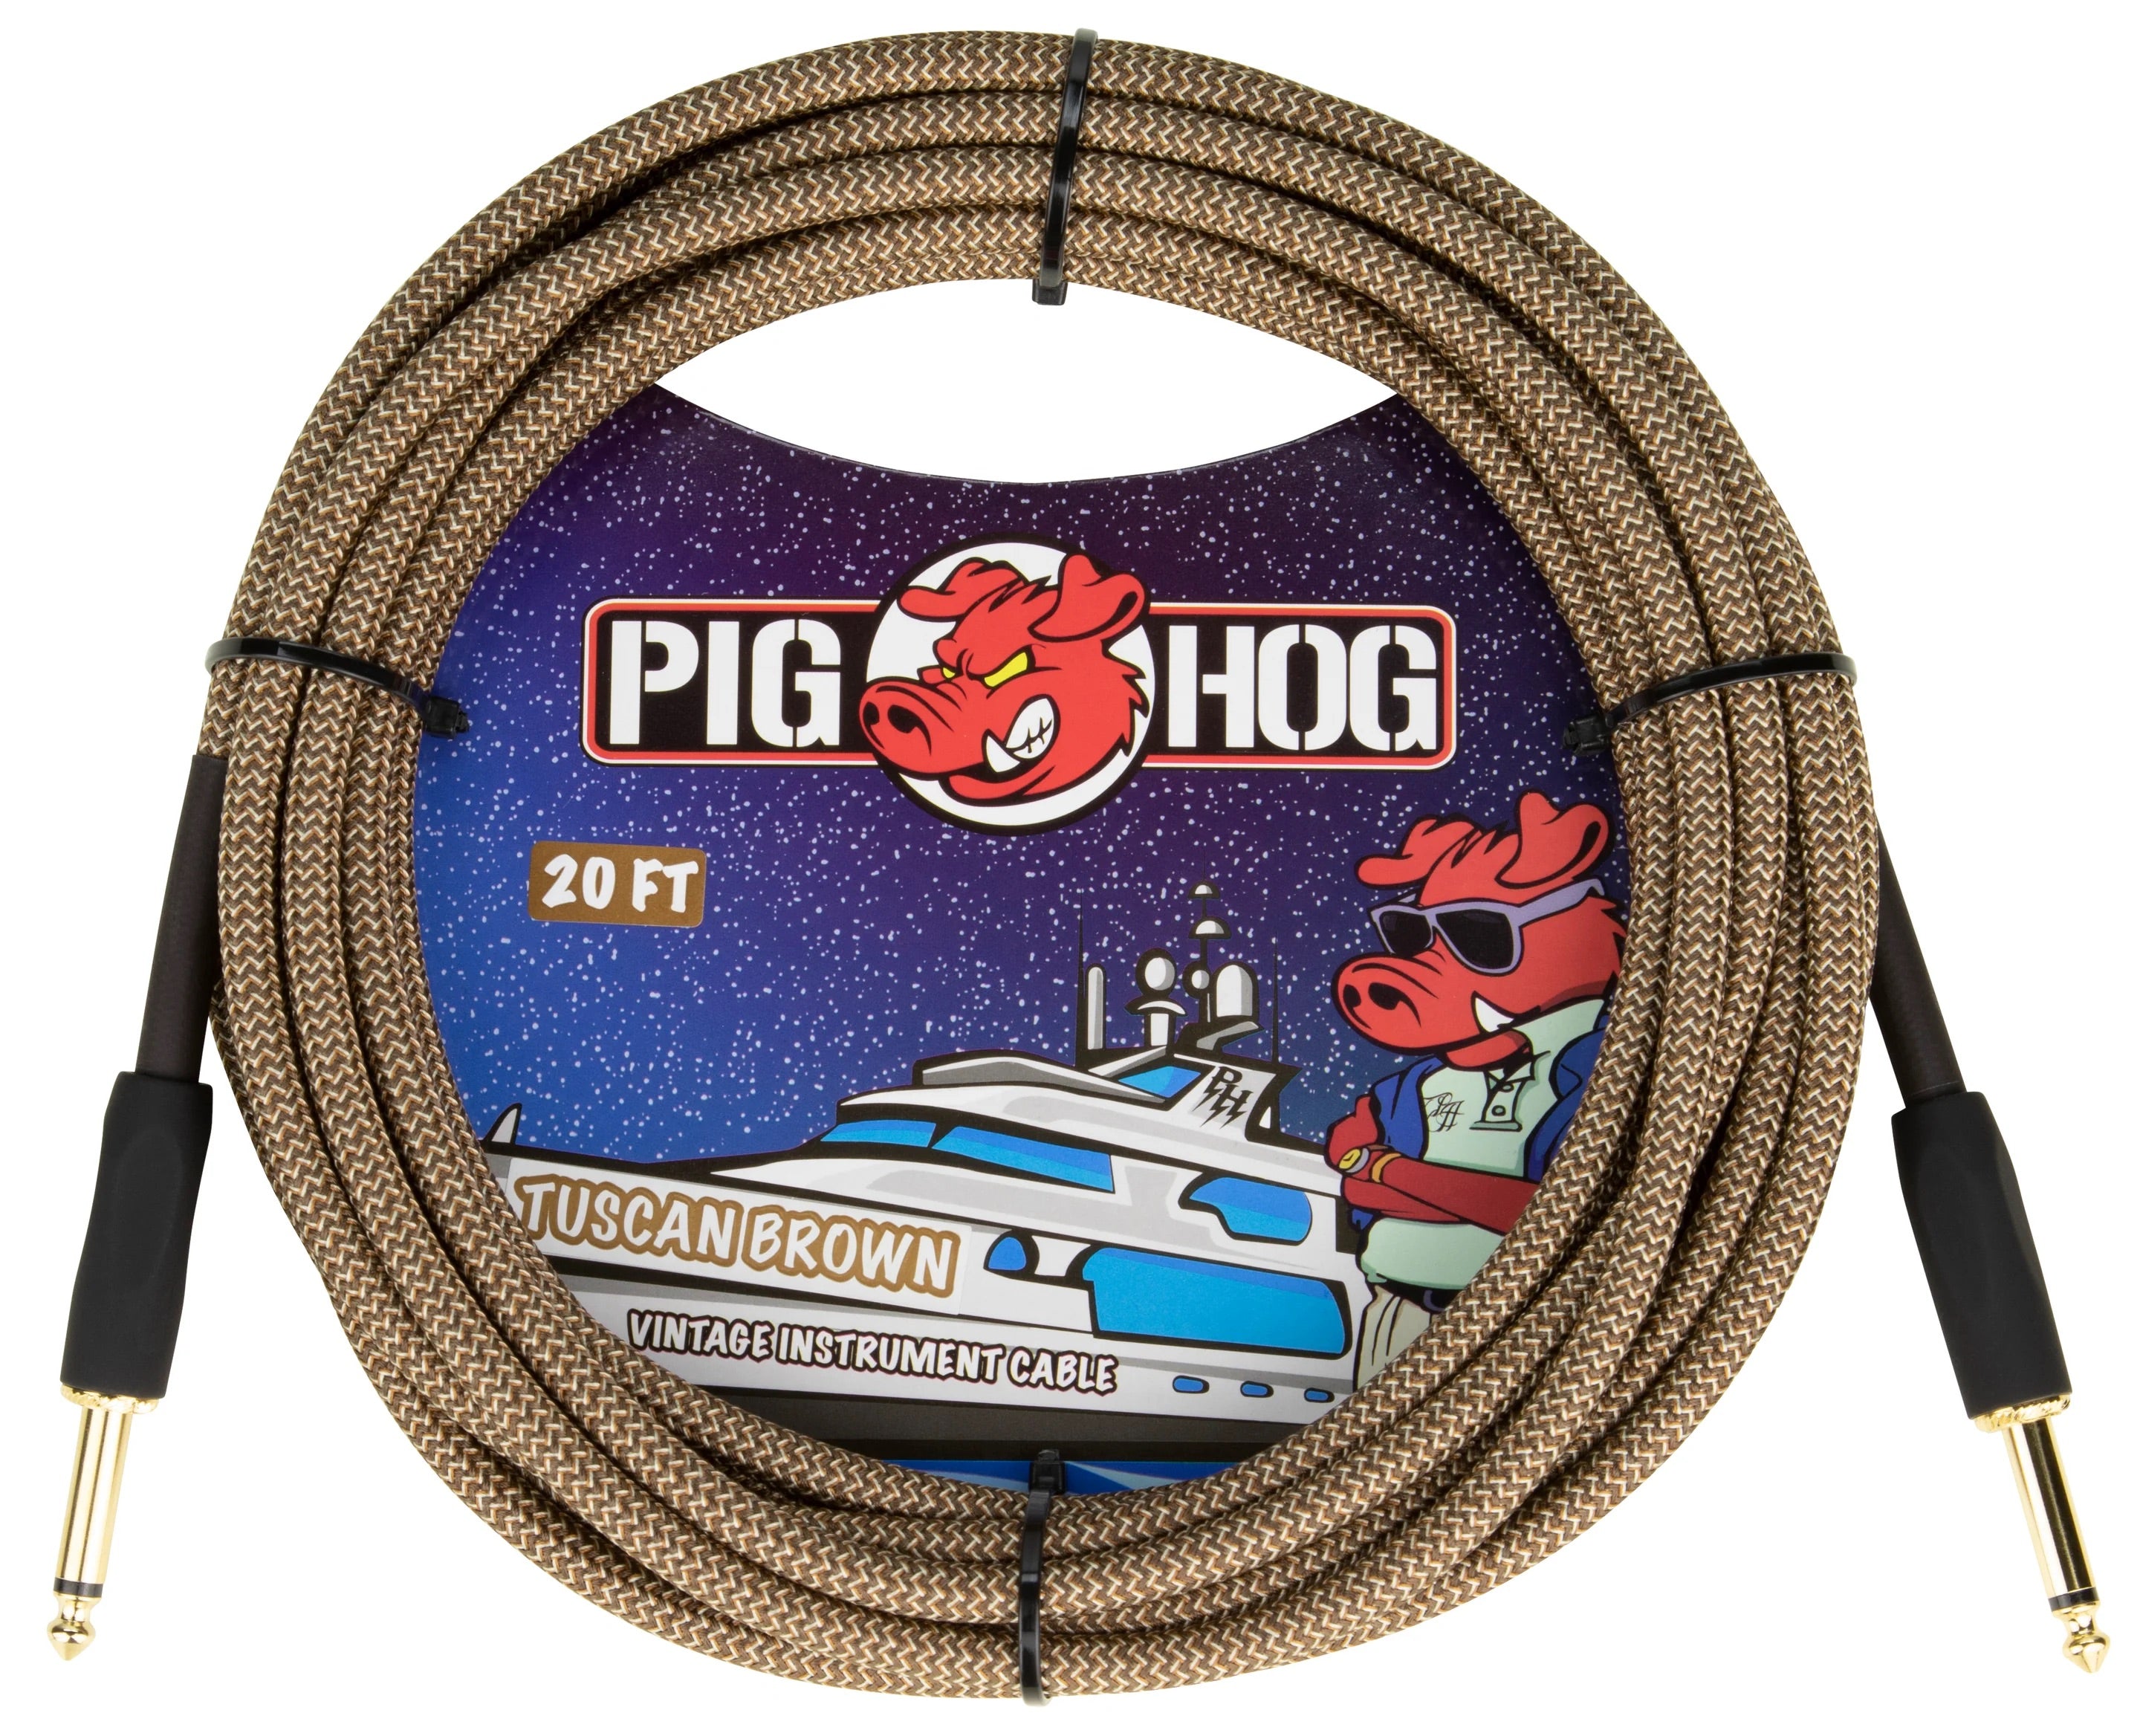 Pig Hog Instrument Cable 20ft